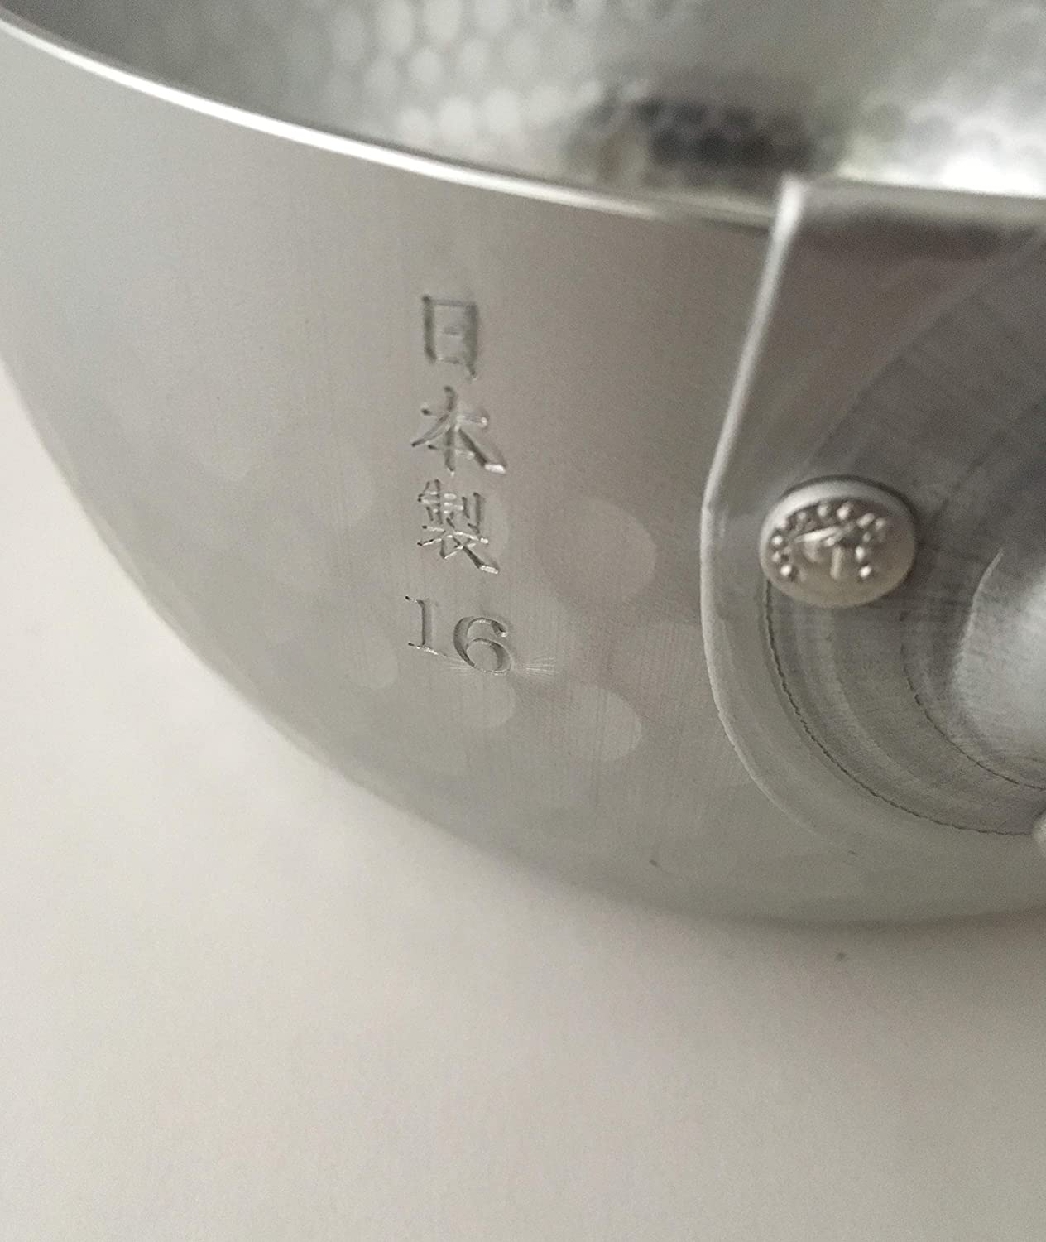 和の職人 谷口金属 日本製 和の職人 誉ゆきひら鍋 シルバー 16cmの商品画像3 